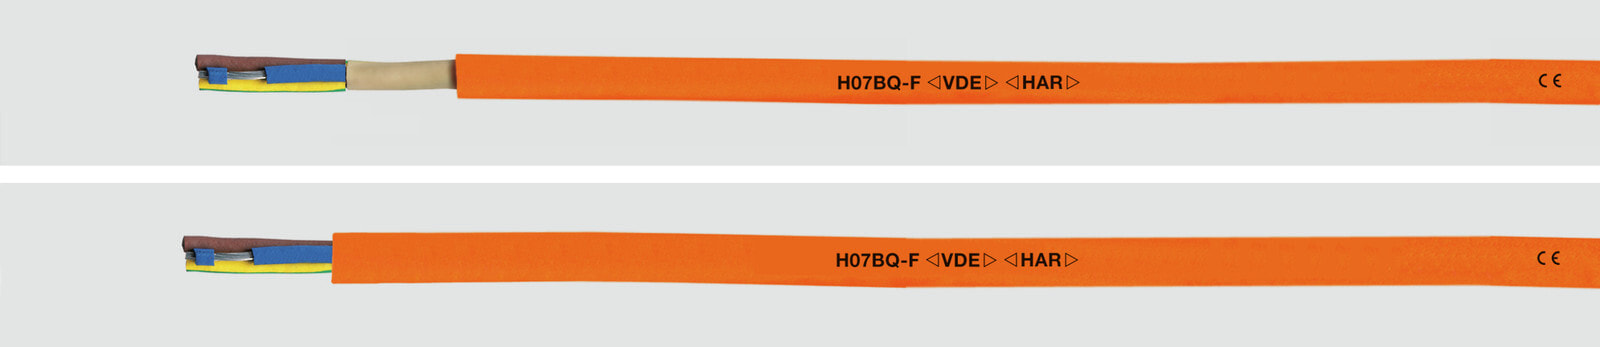 Helukabel H07BQ-F 5G 1,5 mm² OG - Low voltage cable - Orange - Polyurethane (PUR) - Rubber - Cooper - 1.5 mm²